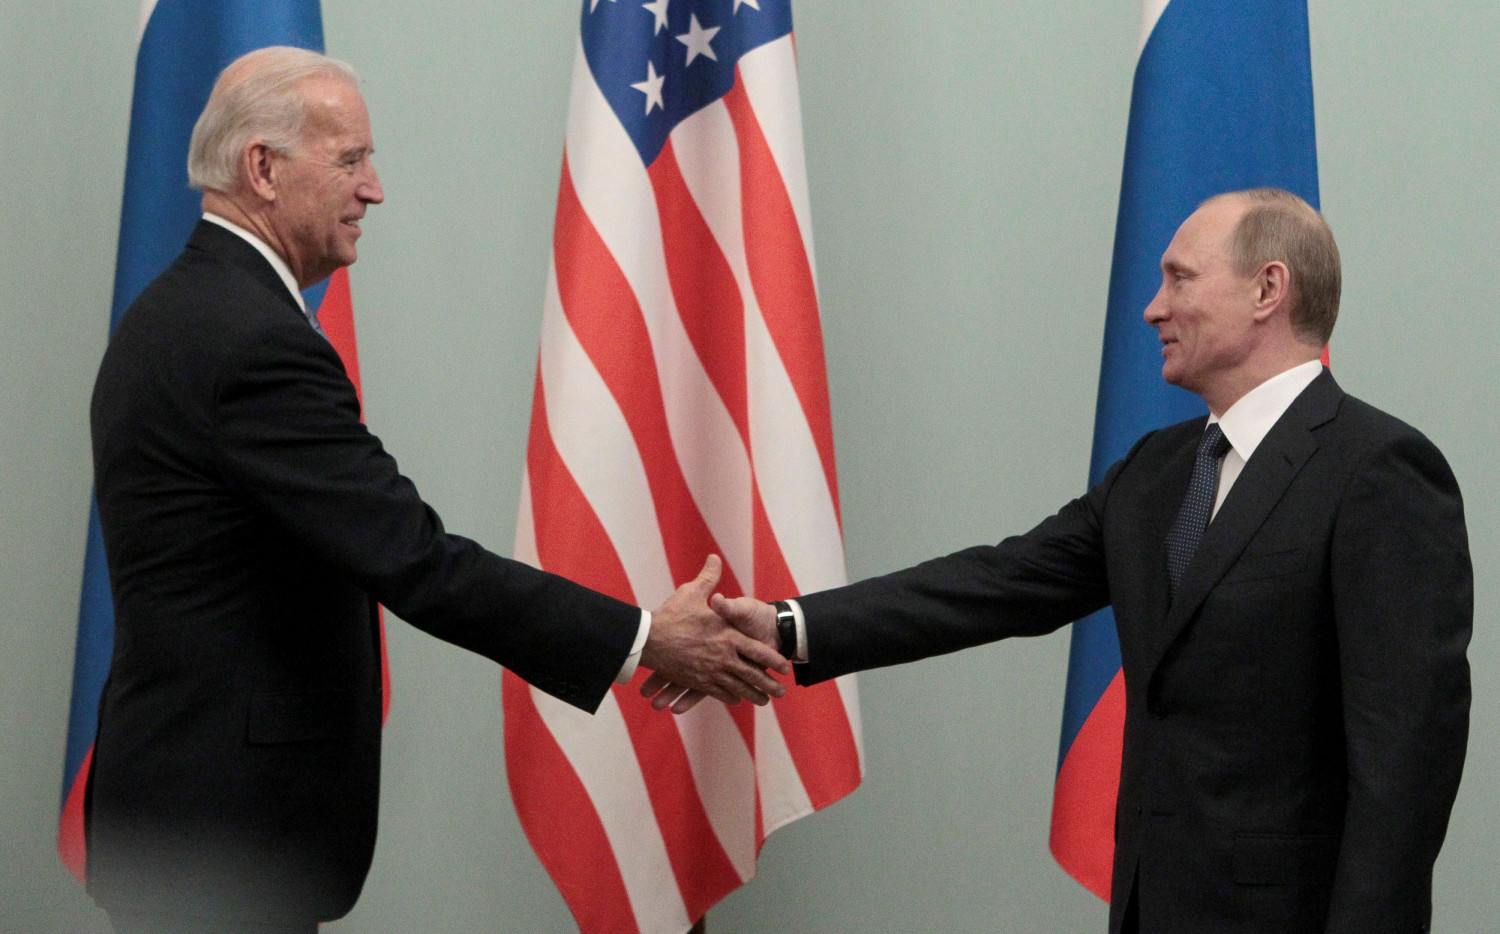 Biden tendrá su primer cara a cara como presidente de EEUU con Putin el 16 de junio